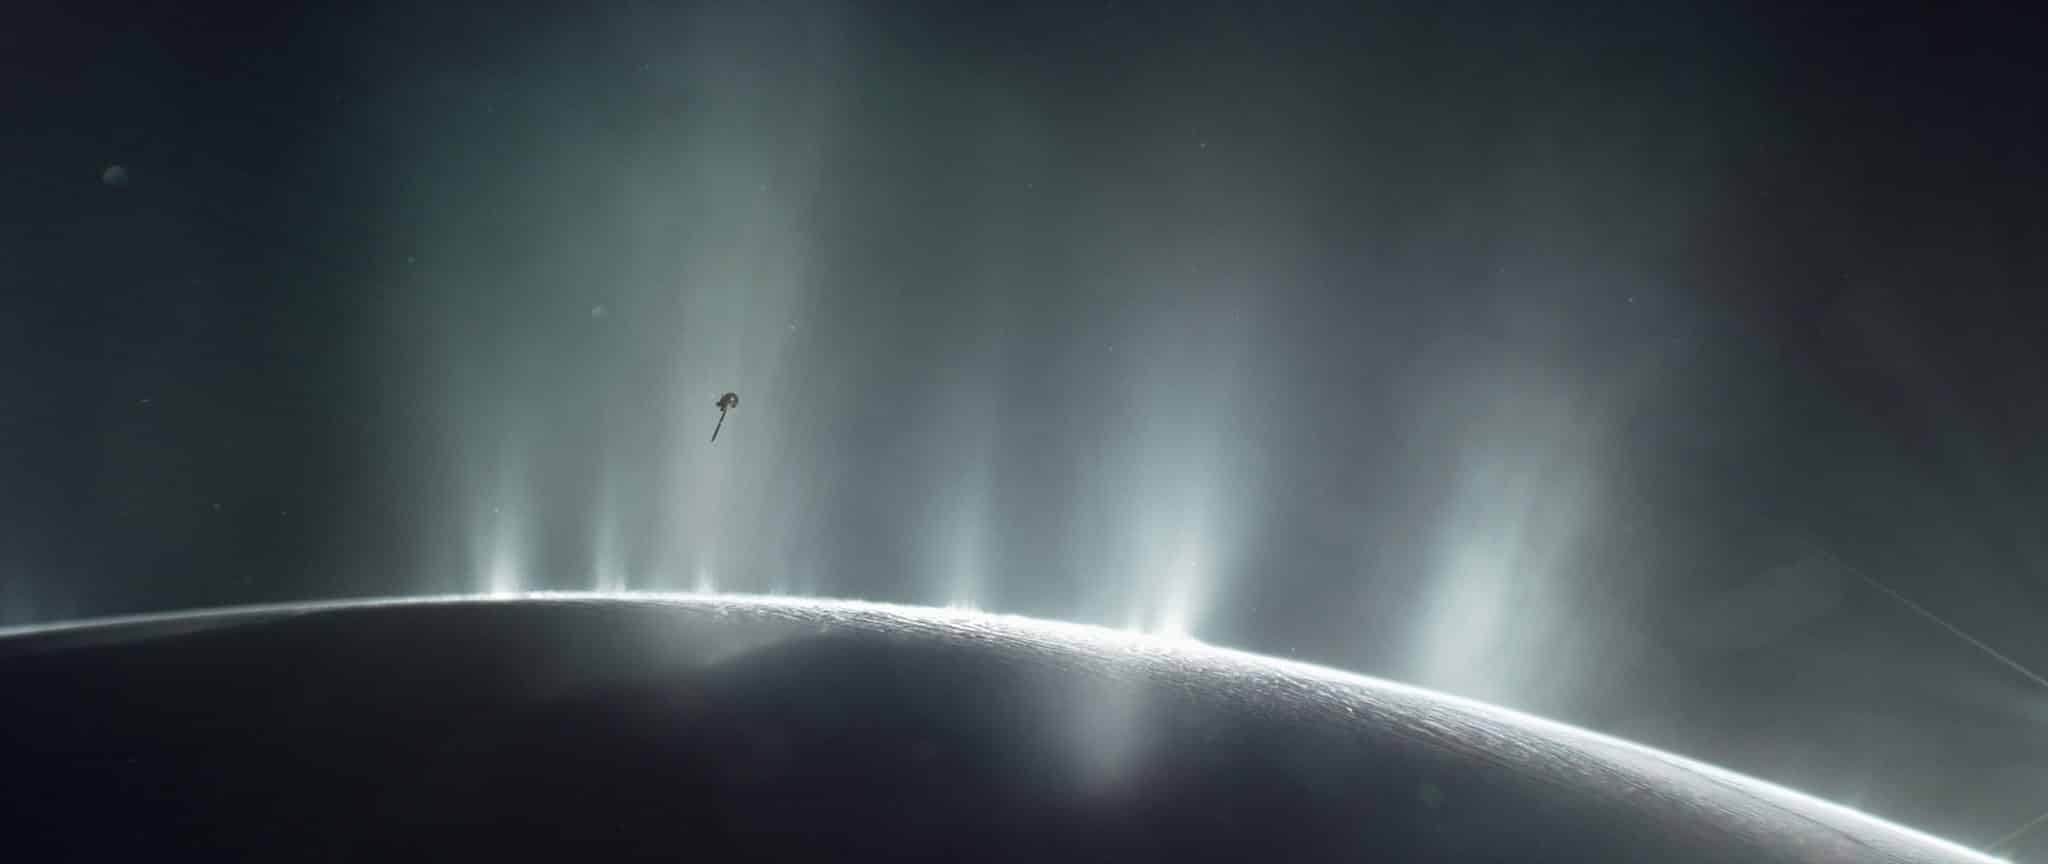 Bolygós rövidhírek: metán az Enceladus holdjának anyagkidobódásaiban – lehetséges életjelek?